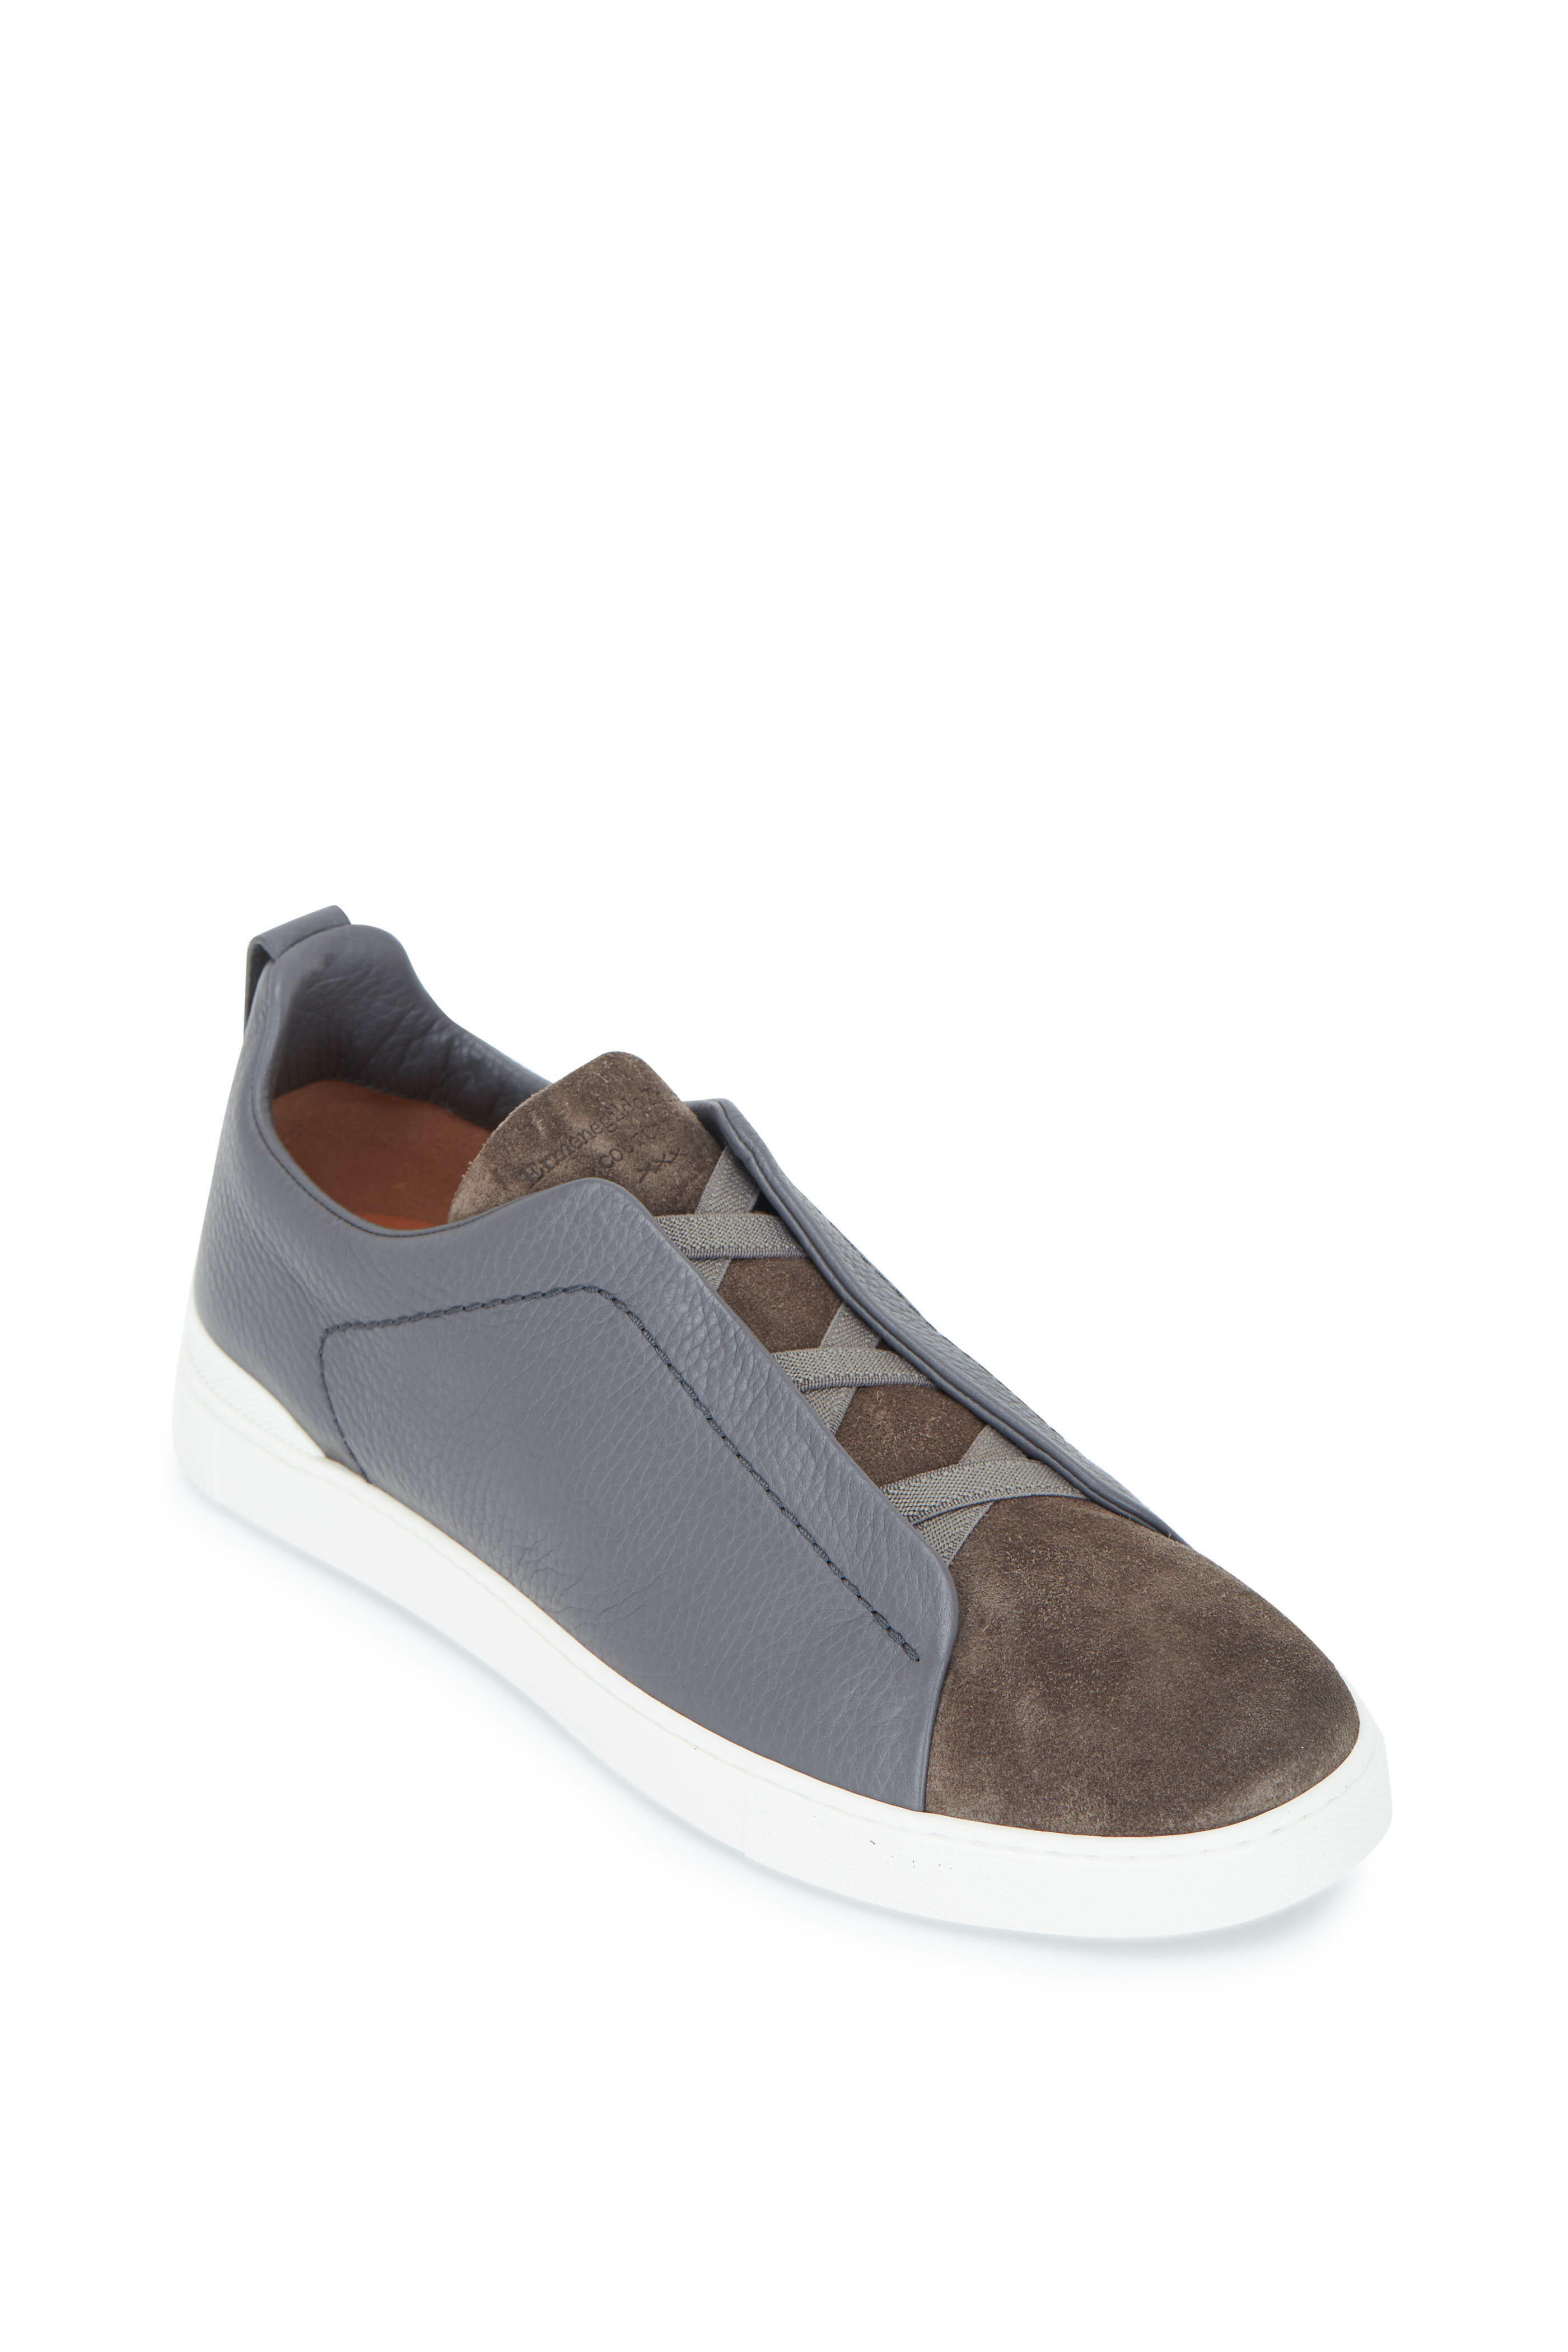 Ermenegildo Zegna Triple Stitch sneakers - Grey